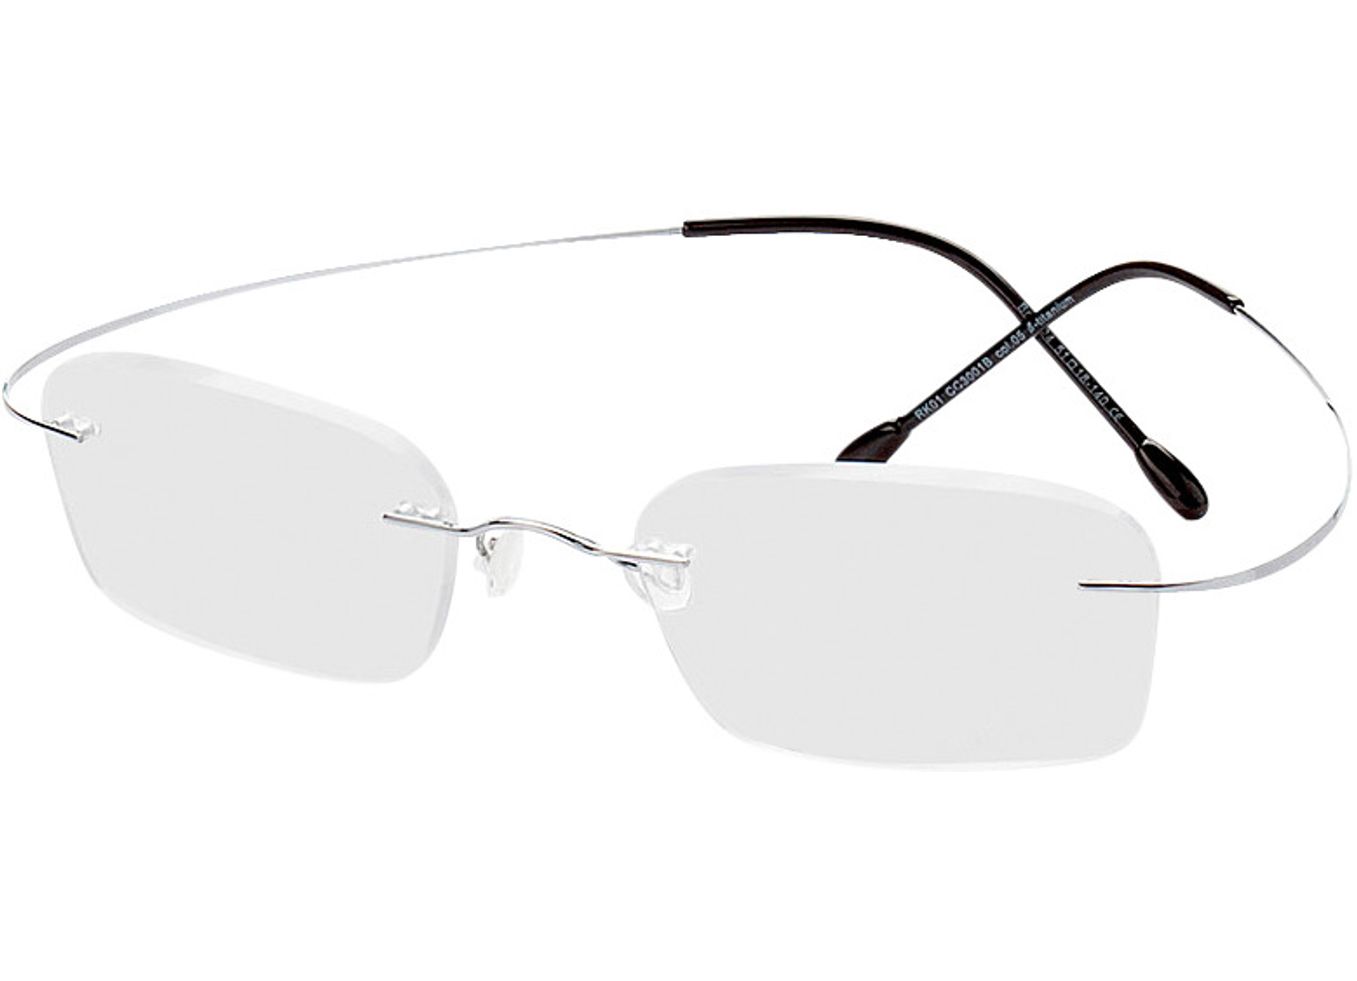 Mackay - silber Gleitsichtbrille, Randlos, Rechteckig von Brille24 Collection